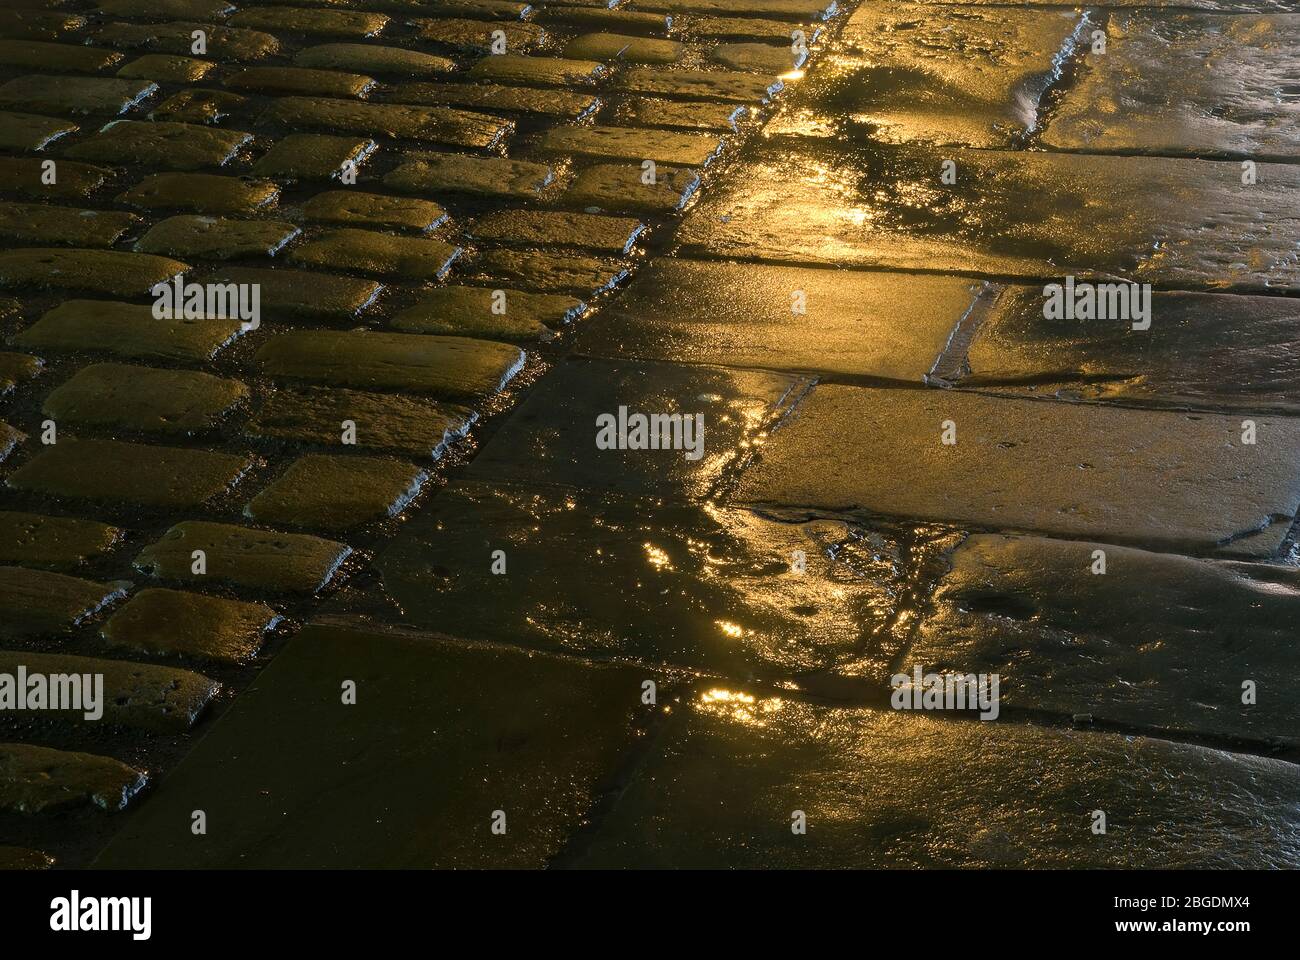 Vista baja del pavimento mojado por la noche mostrando losas y bloques redondeados más pequeños con iluminación de la calle reflejada en la humedad Foto de stock